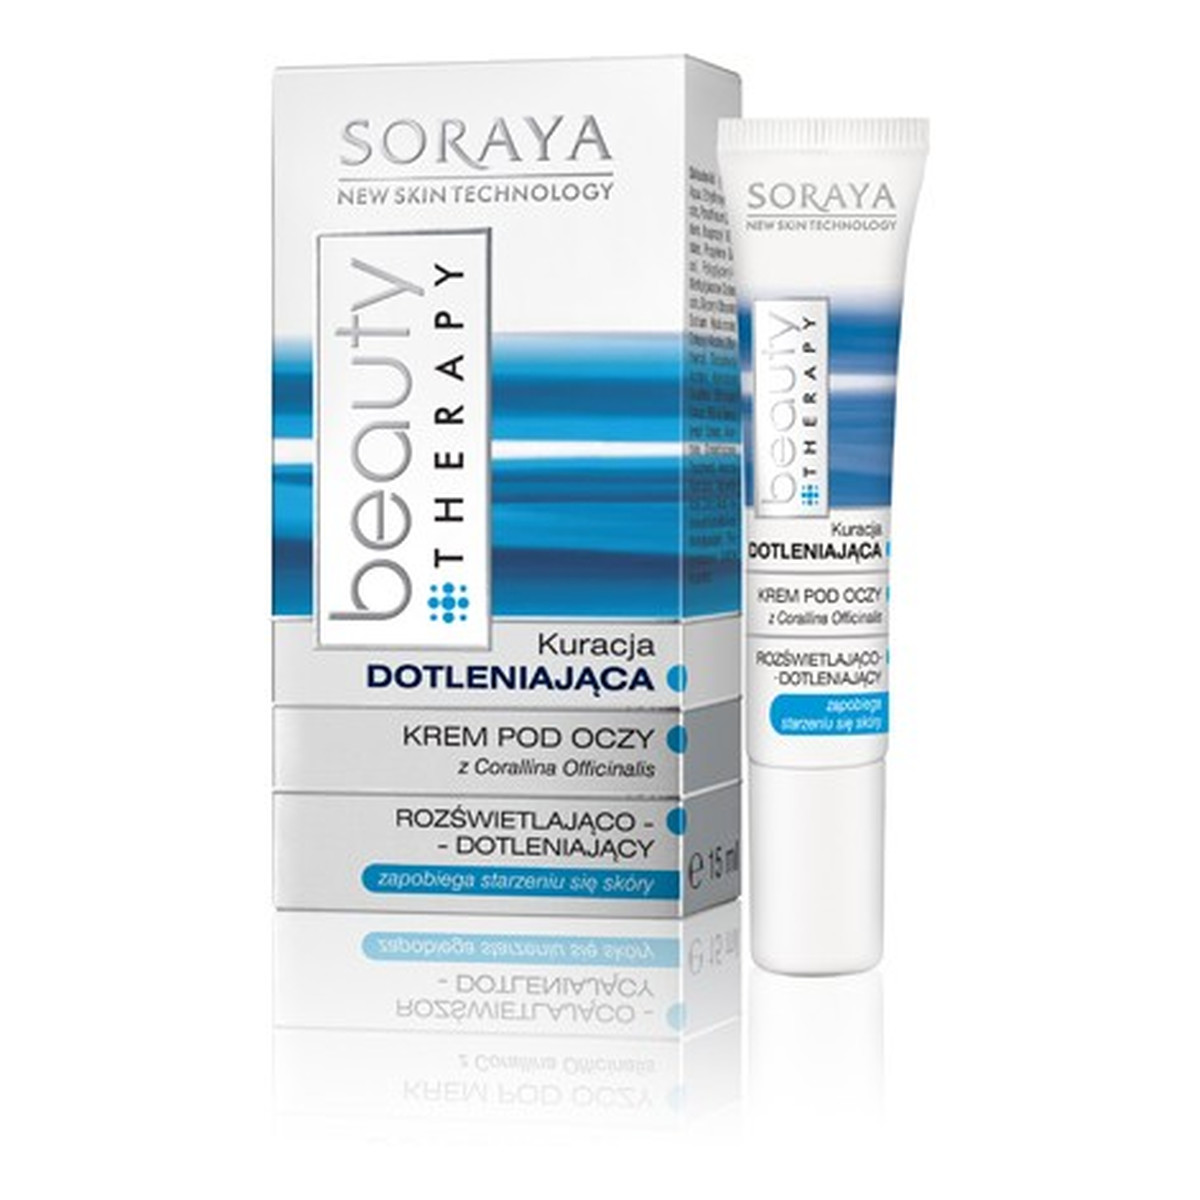 Soraya Beauty Therapy Krem Pod Oczy Rozświetlająco-Dotleniający 15ml